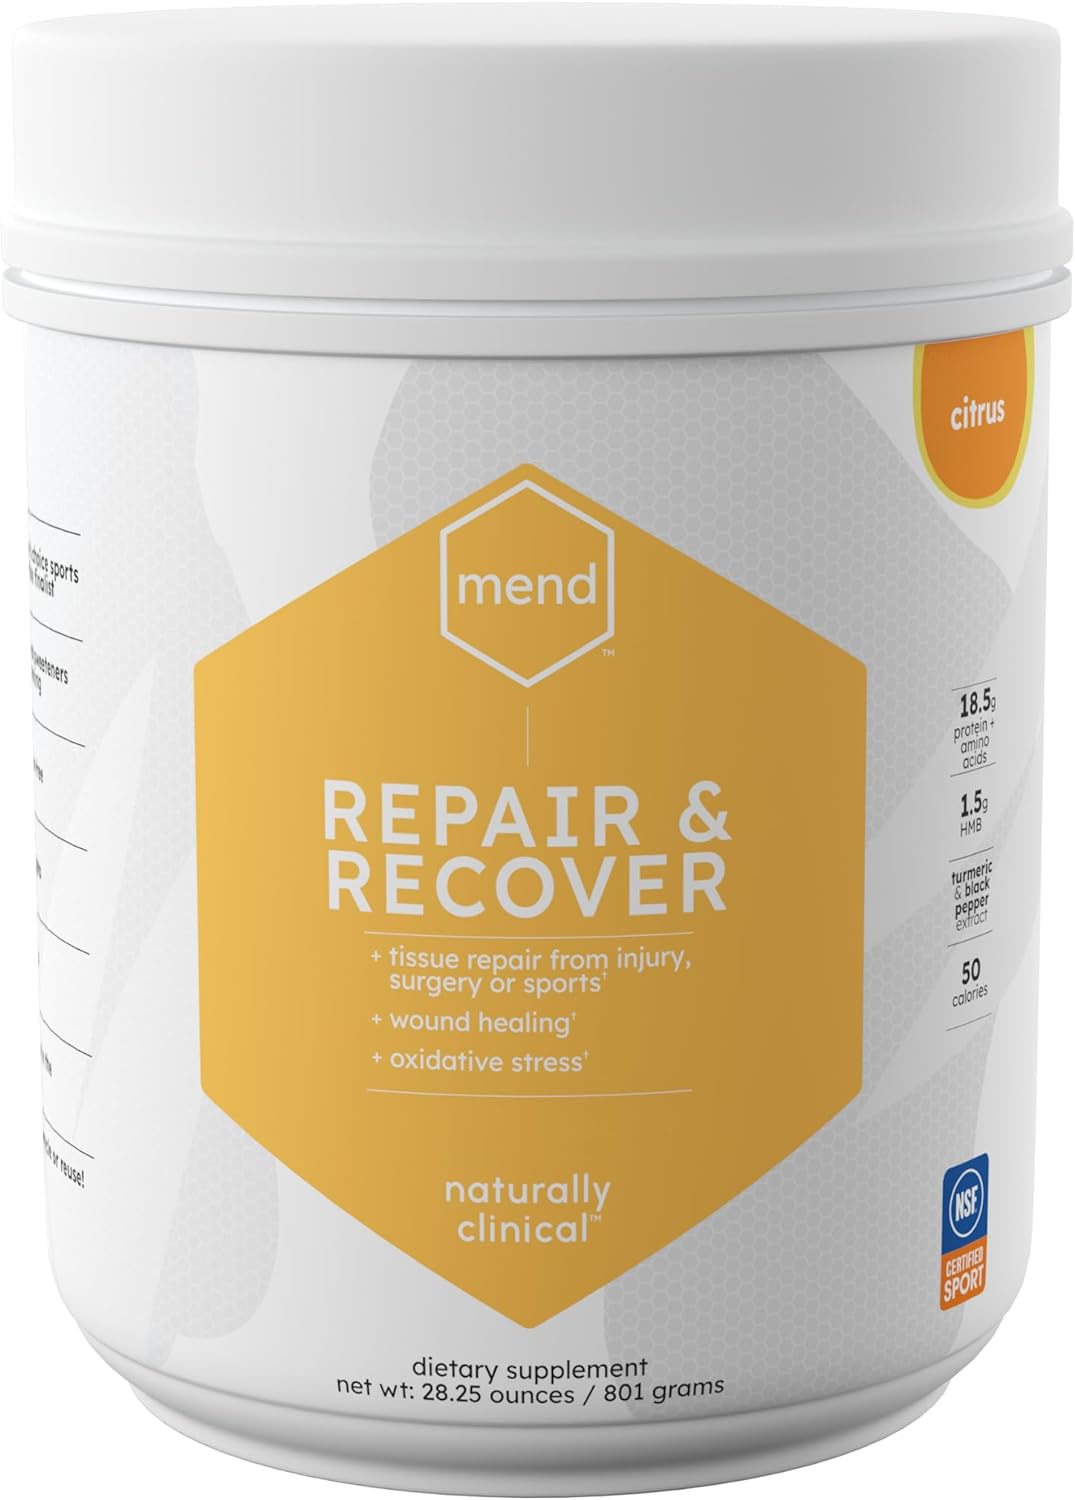 MEND-Repair-&-Recover-Citrus-Protein-307